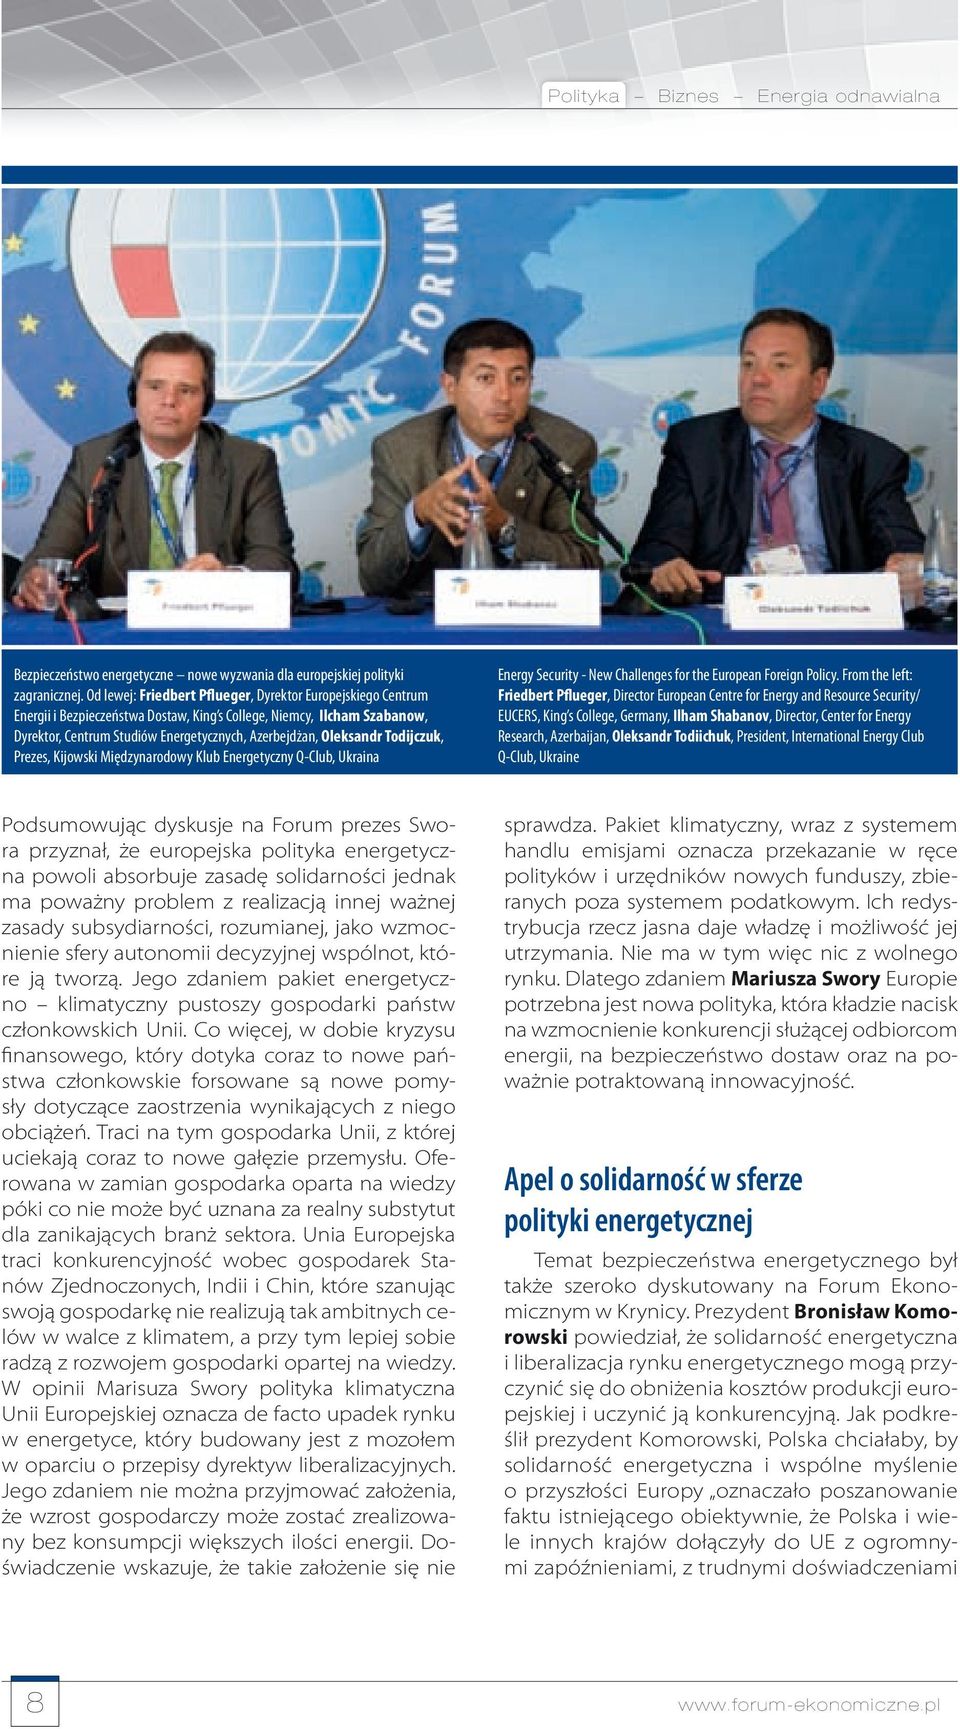 Todijczuk, Prezes, Kijowski Międzynarodowy Klub Energetyczny Q-Club, Ukraina Energy Security - New Challenges for the European Foreign Policy.